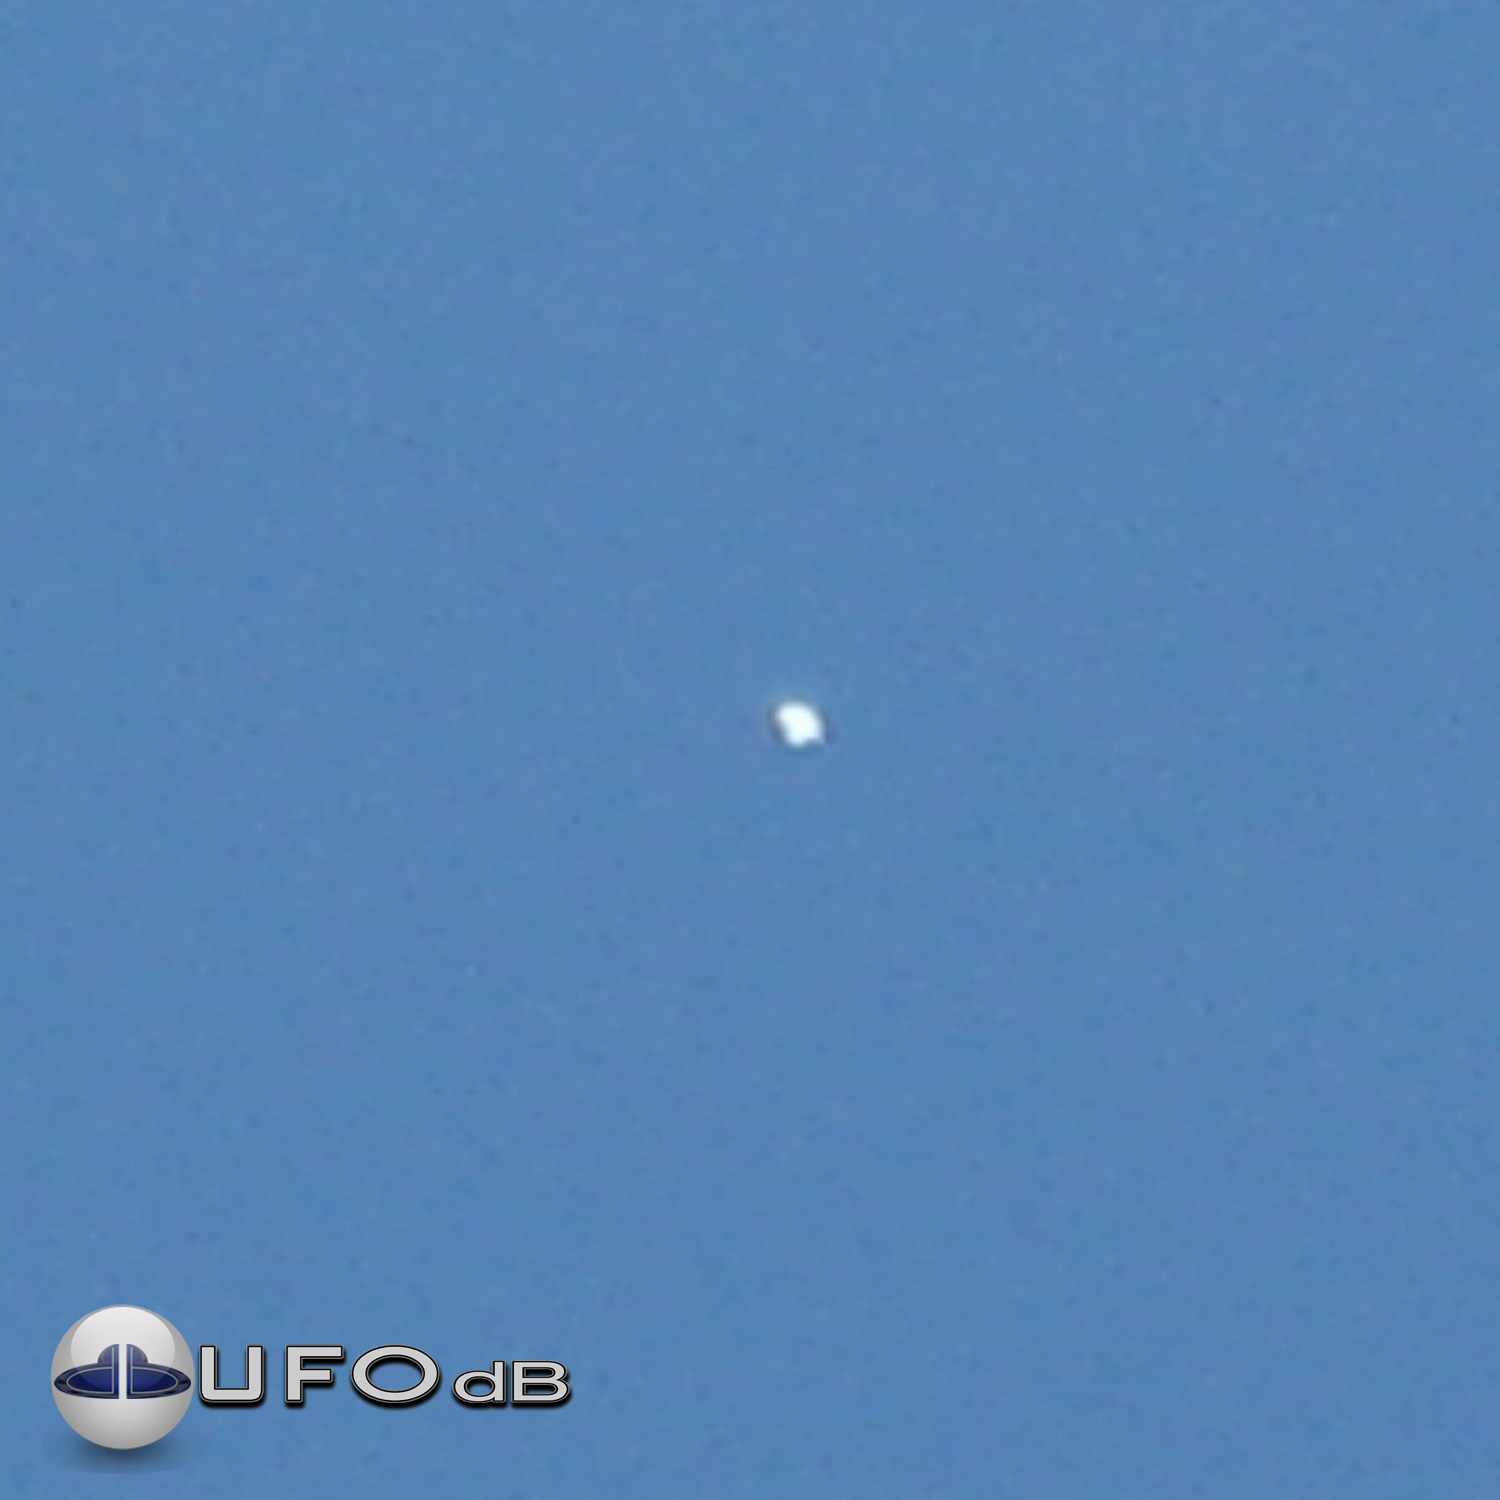 Extremely Shinning UFO probe over Yavatmal | Maharashtra, India 2009 UFO Picture #212-1